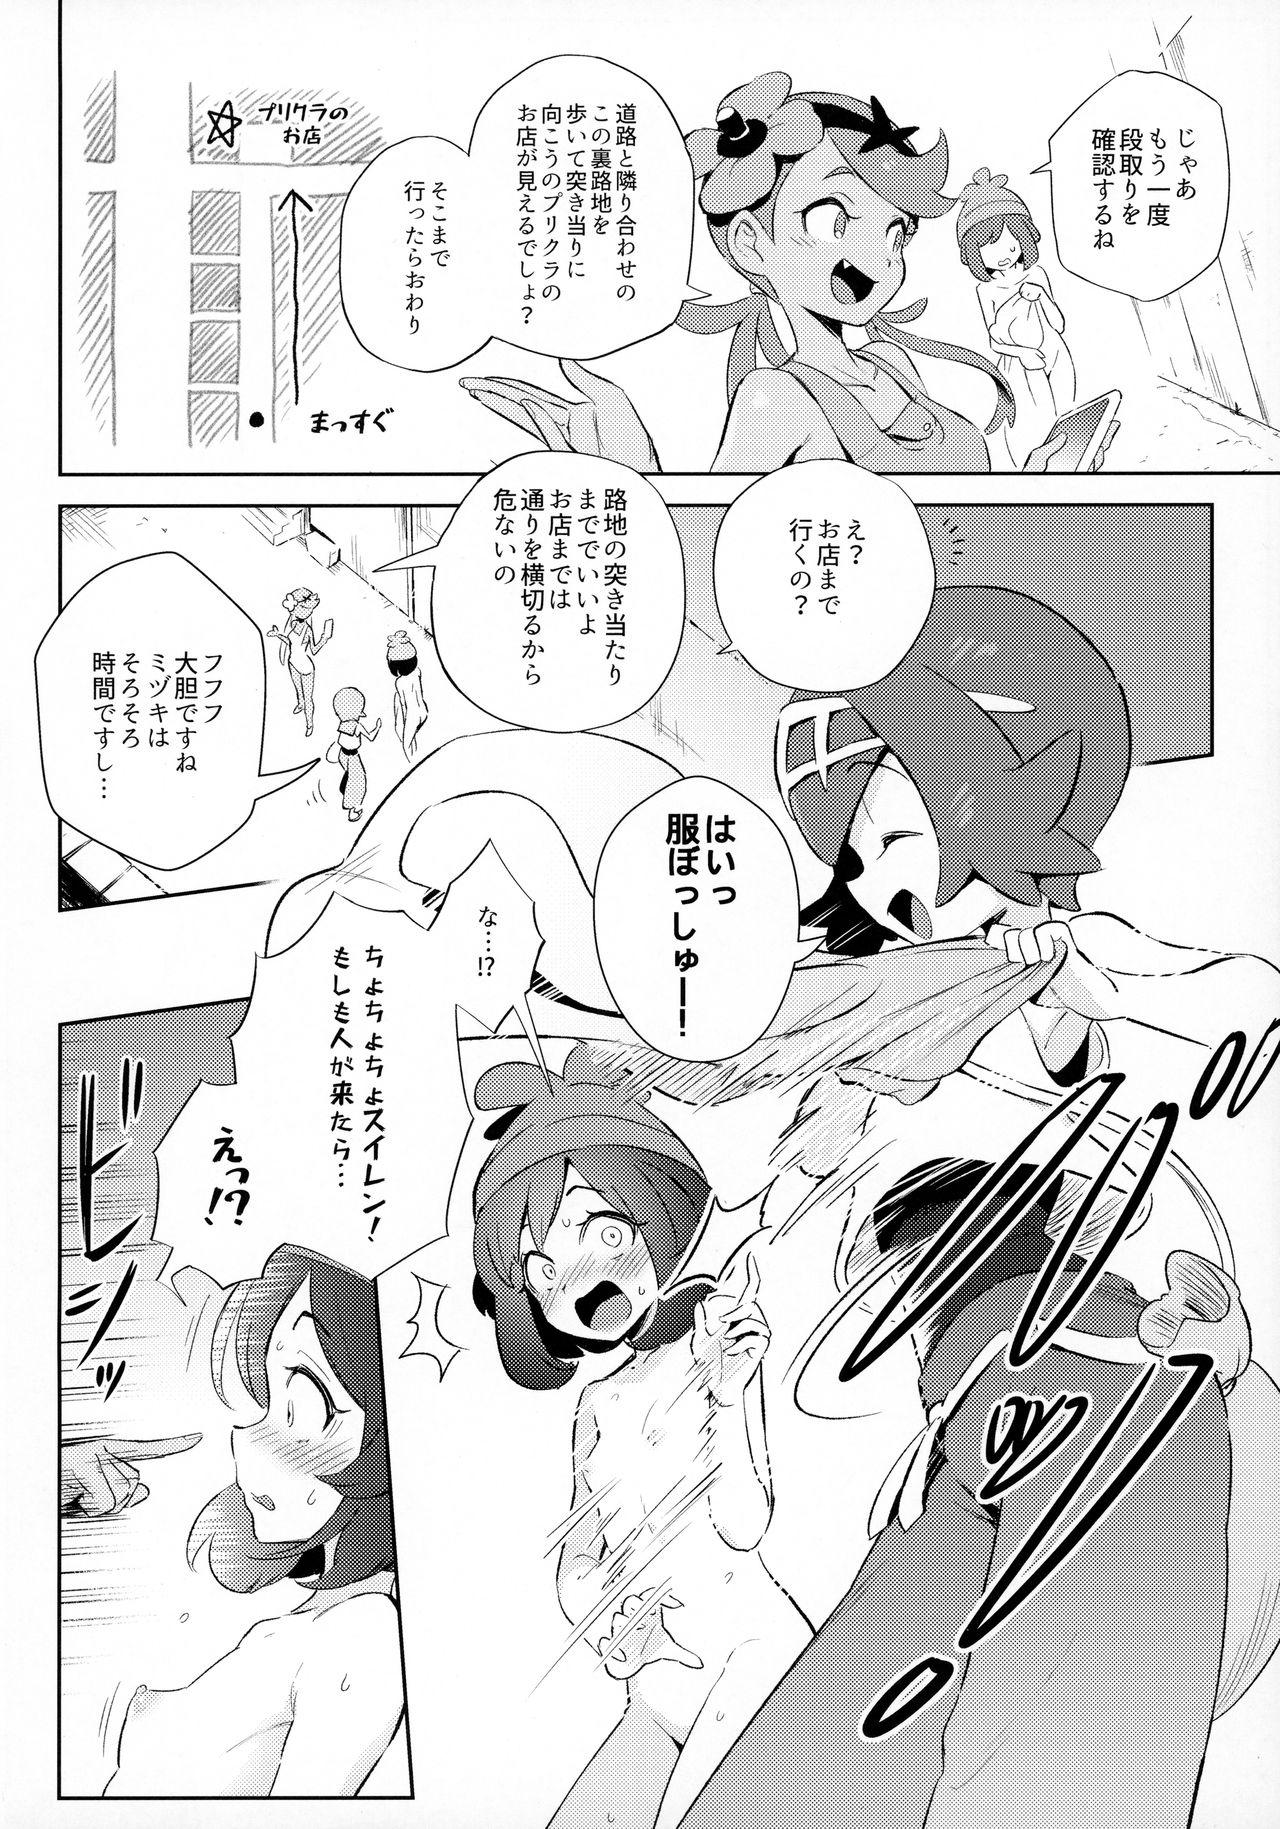 Twerking Onnanoko-tachi no Himitsu no Bouken - Pokemon | pocket monsters Gay Black - Page 6